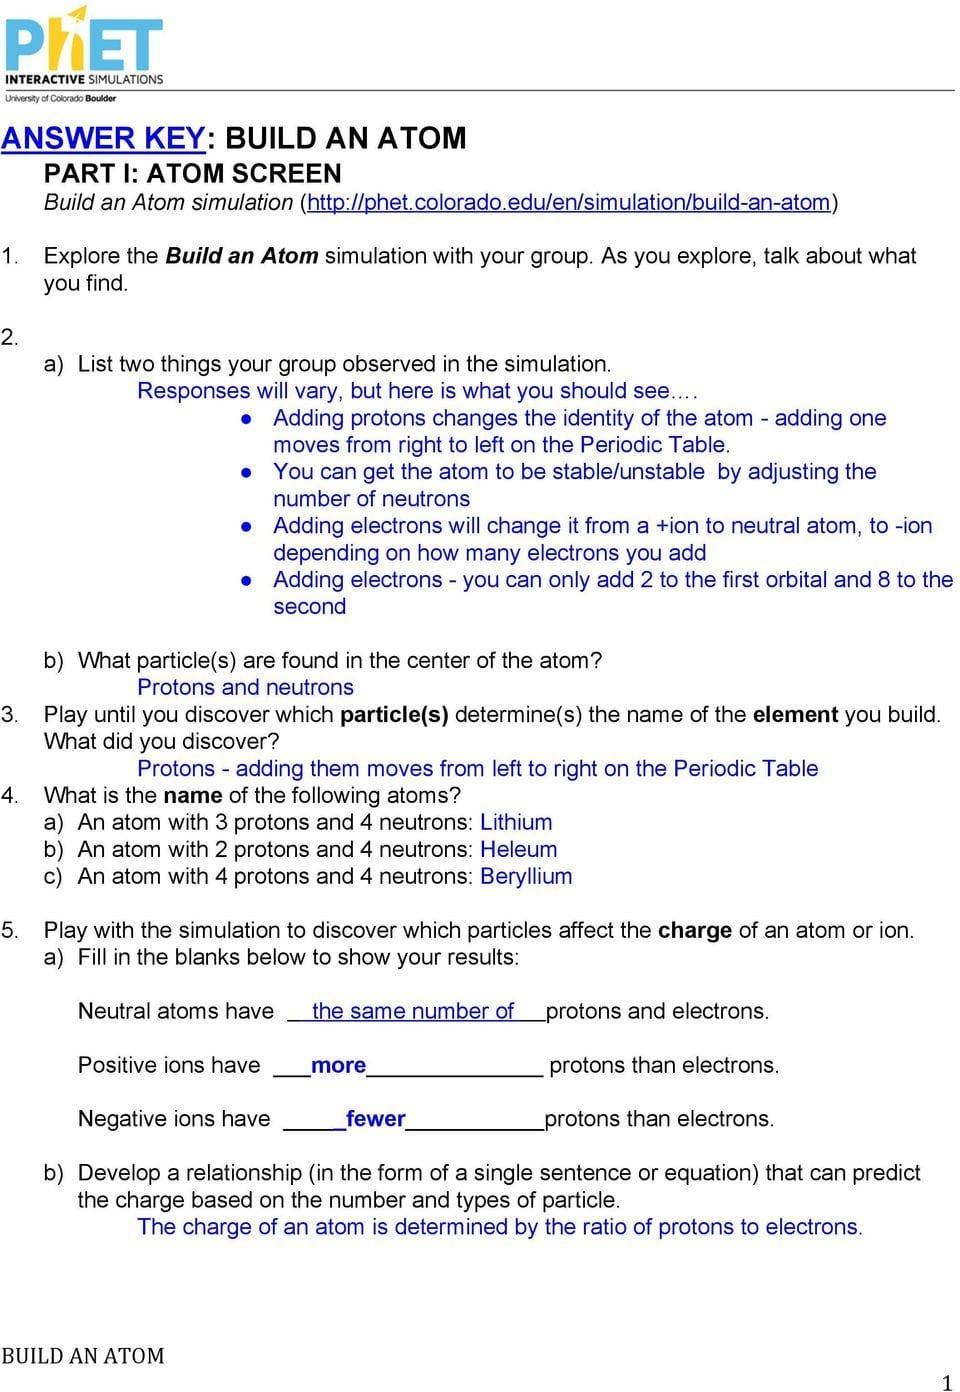 Abundance Of Isotopes Chem Worksheet 4 3 Answers